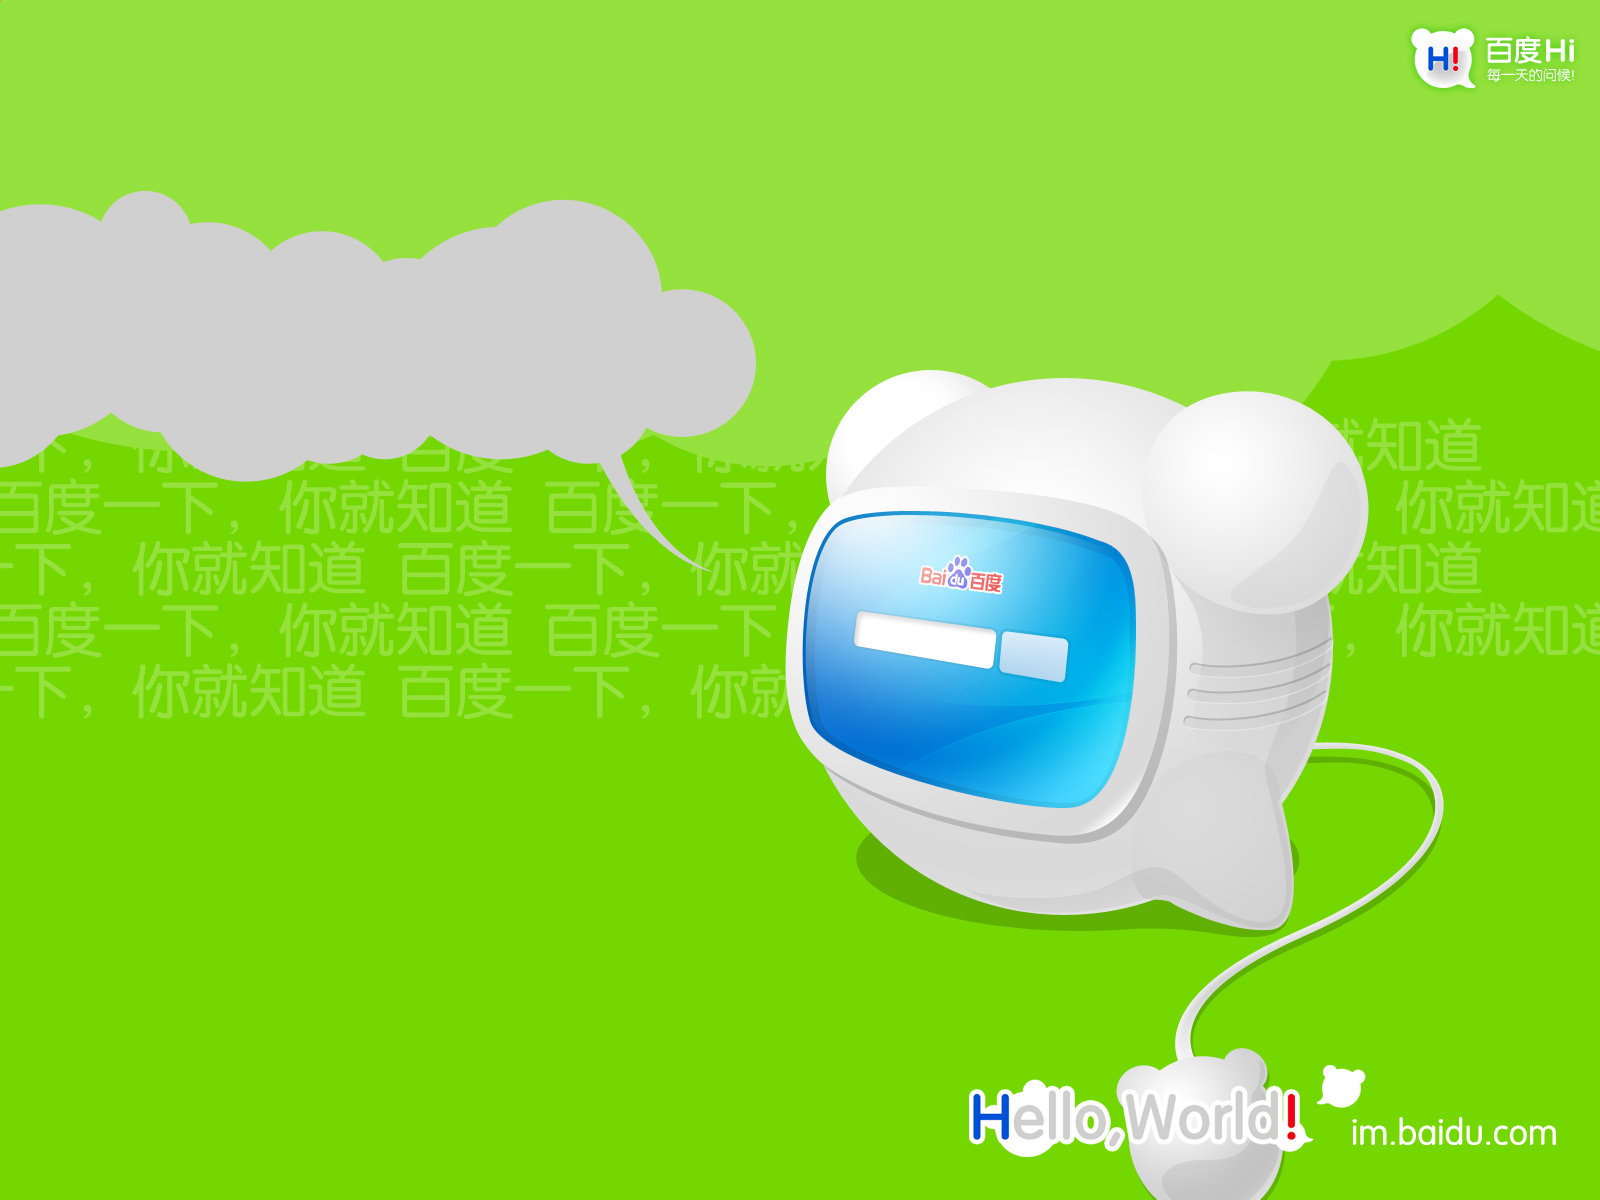 Laden Sie Baidu_Hallo HD-Desktop-Hintergründe herunter